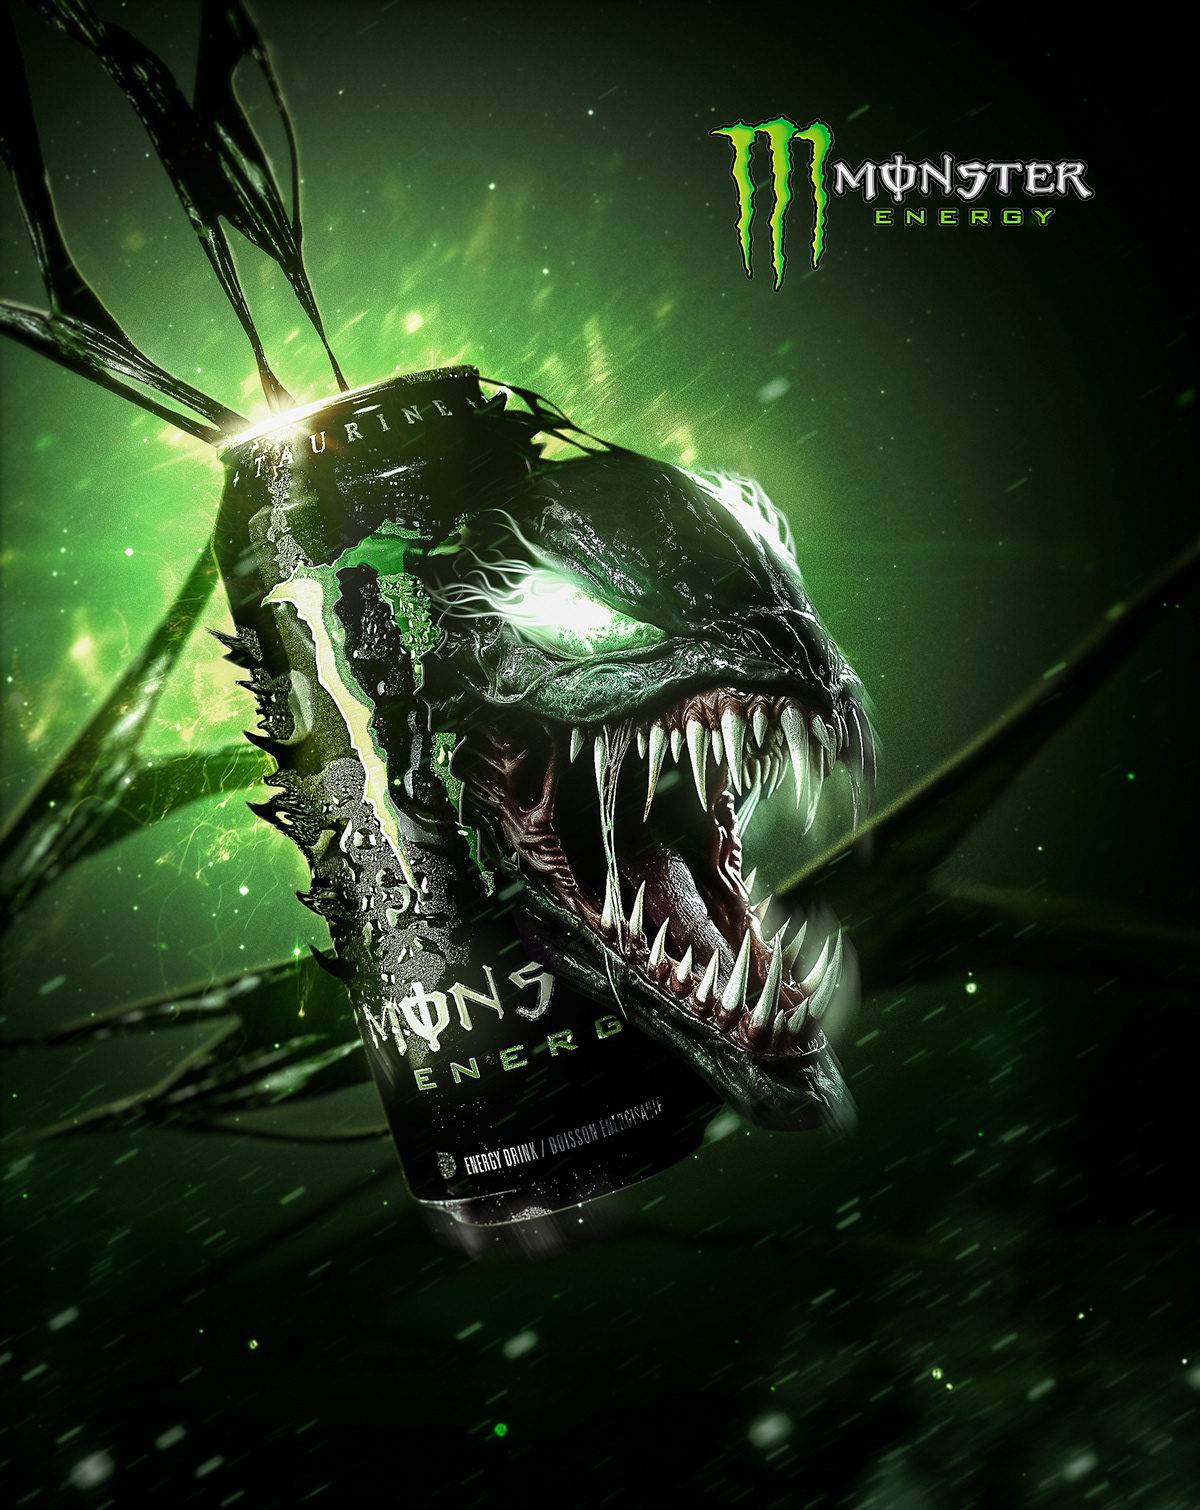 marvel monster venom green creative Monster Energy Drink Creative Design energ manipulati